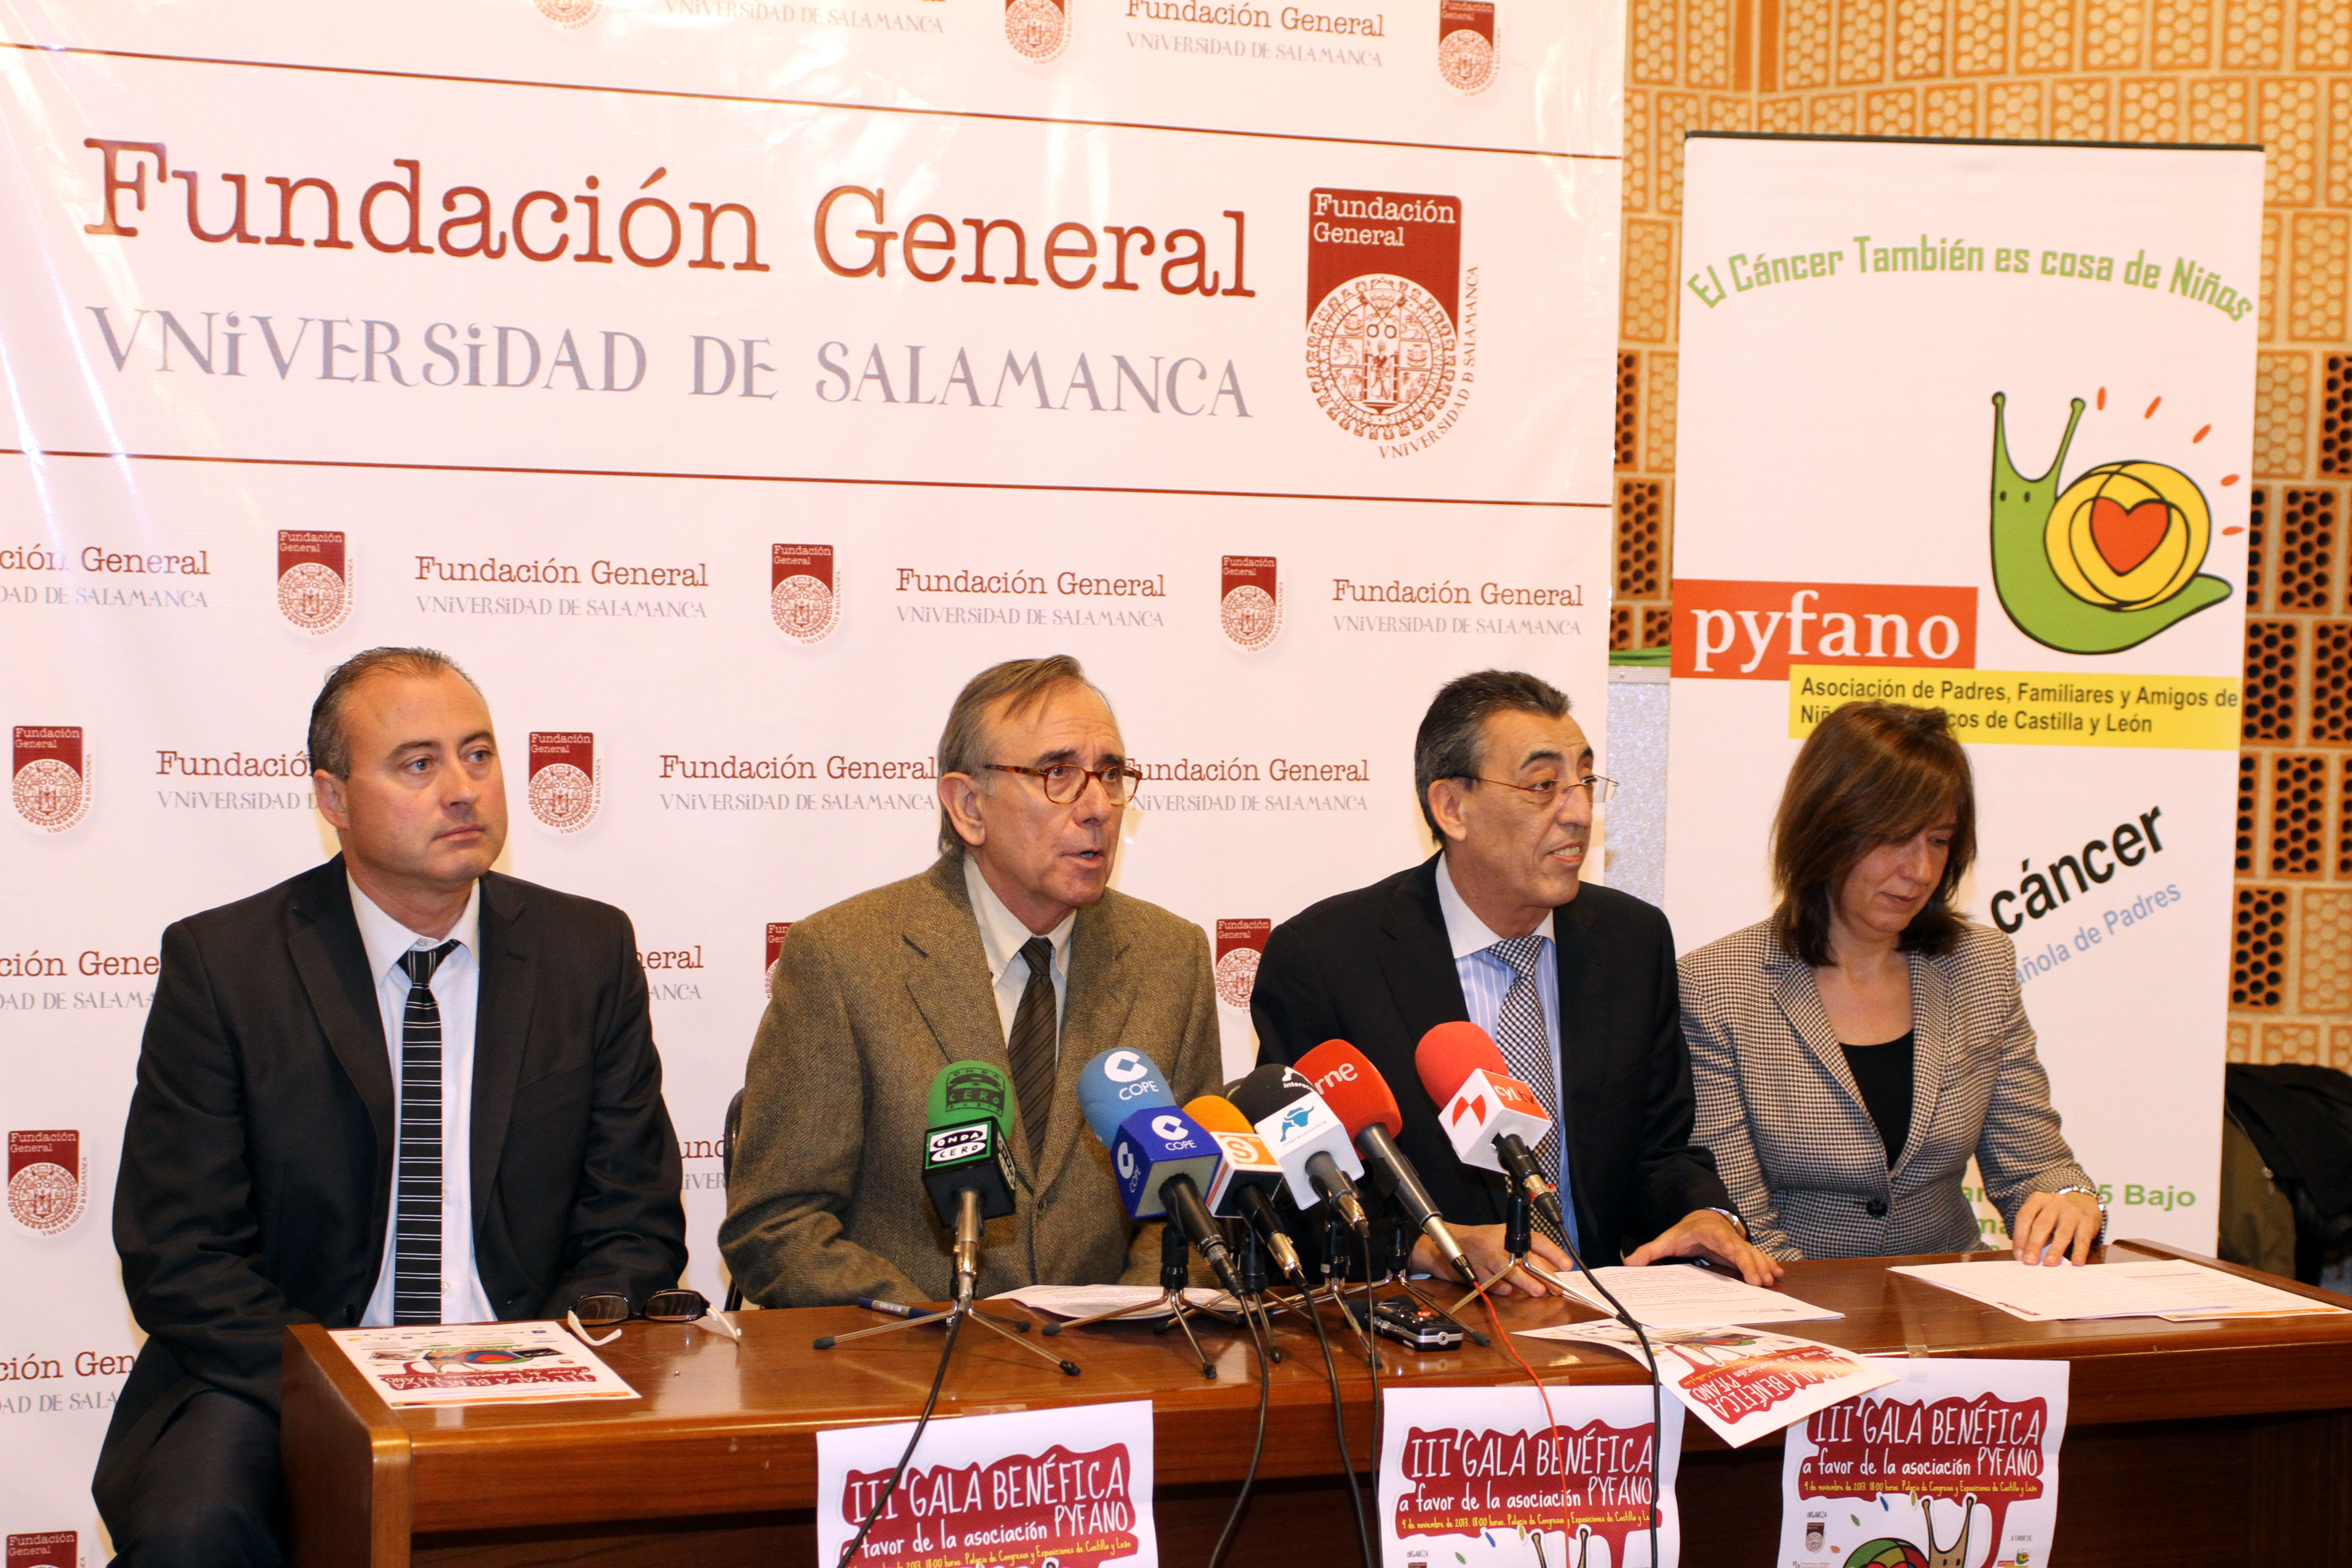 La Fundación General de la Universidad de Salamanca colabora en la III Gala Benéfica a favor de la Asociación PYFANO